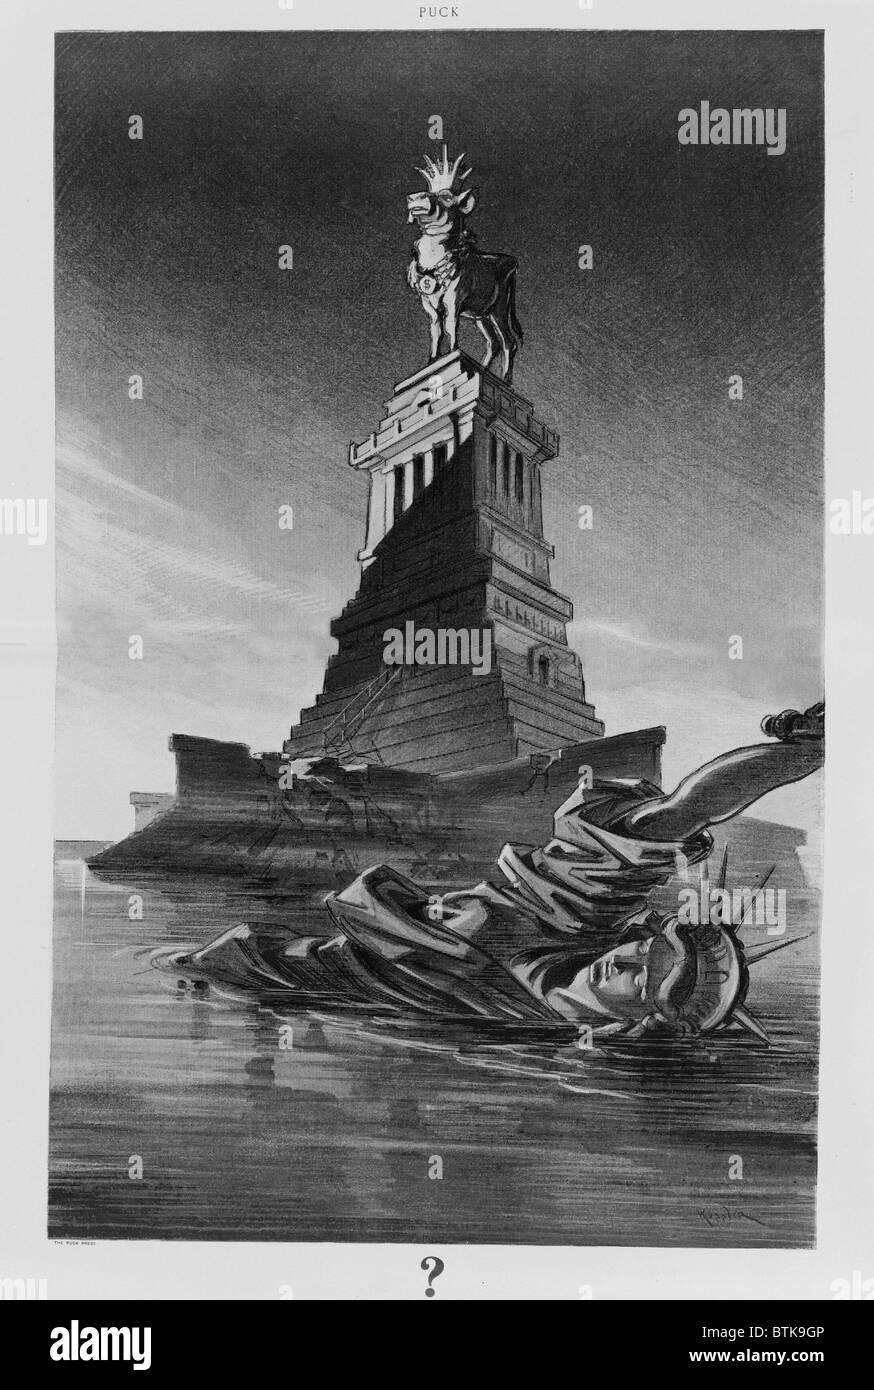 1912 Cartoon angreifen Geschäft Gier zeigt der zerstörten Statue of Liberty, schwebend in der New York Bay. Freiheit ist durch ein goldenes Kalb auf ihrem Sockel ersetzt Krone und Kragen mit $-Zeichen tragen. Stockfoto